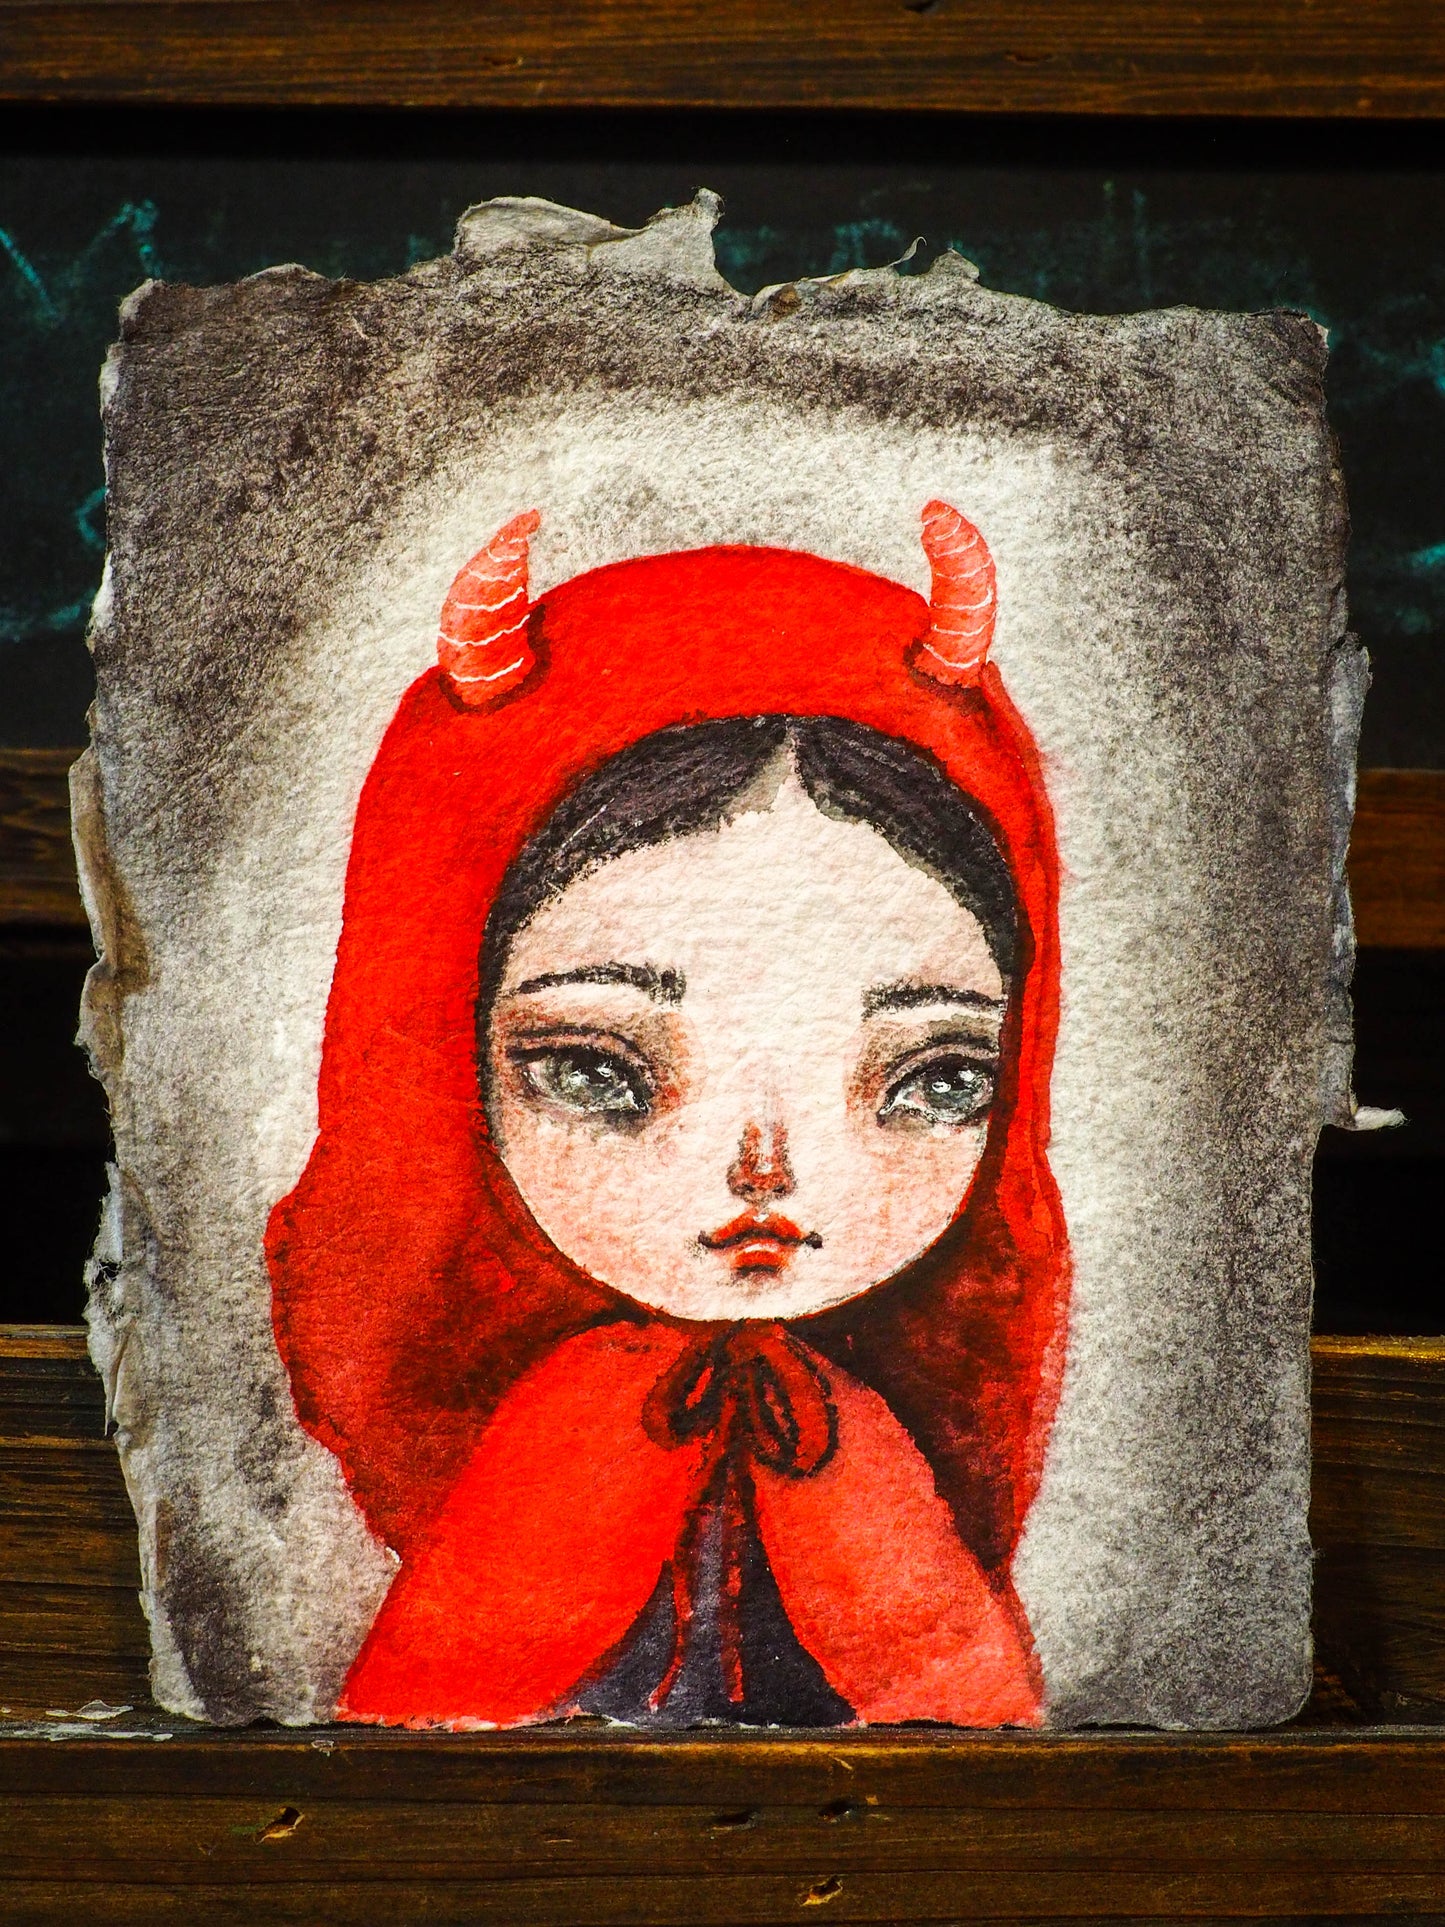 LUCY THE DEVIL GIRL - An original watercolor on rough paper by Danita Art, Original Art by Danita Art